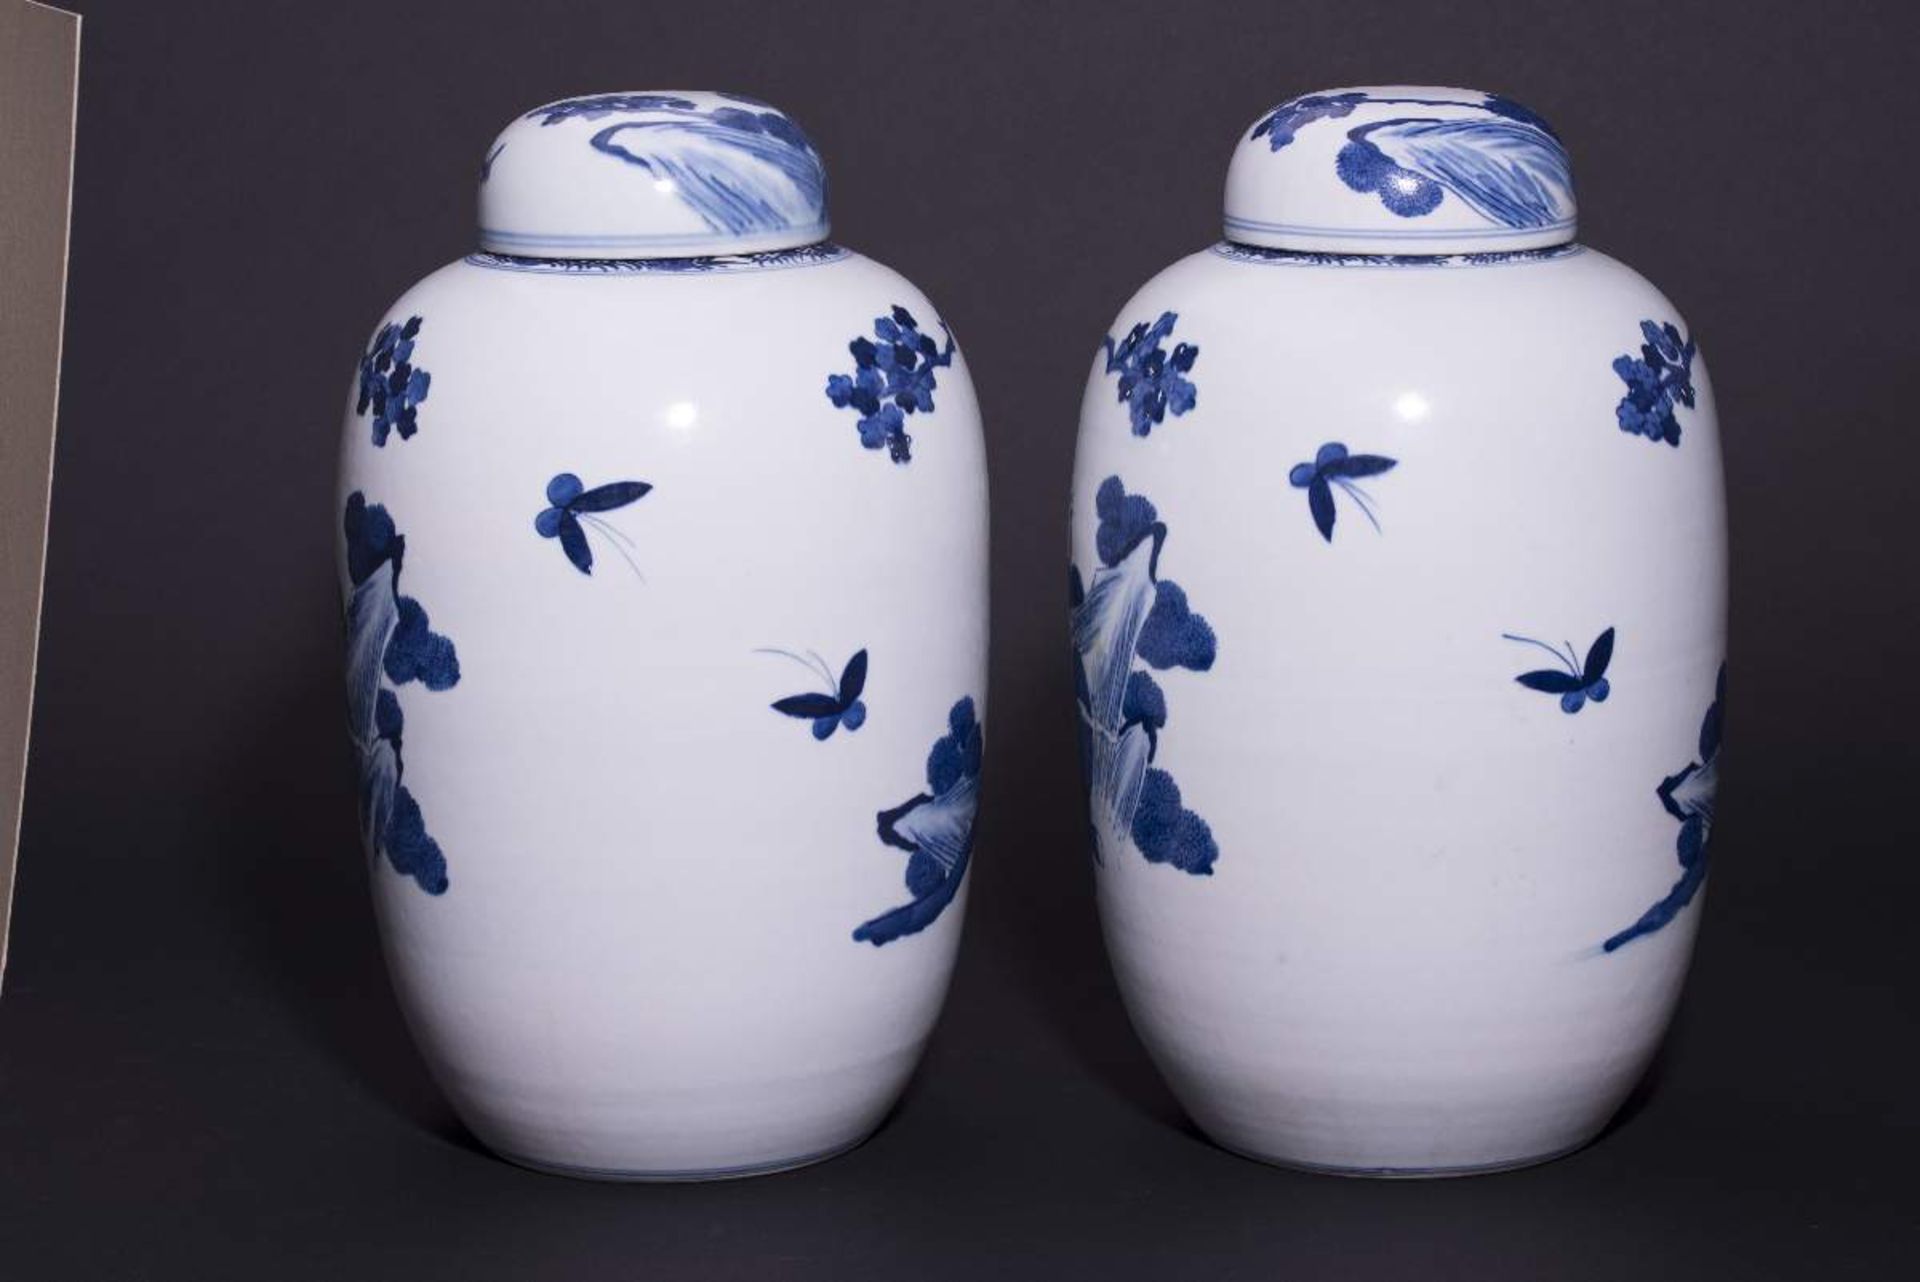 PAAR DECKELVASEN MIT GARTENSZENENBlauweißes Porzellan. China, Qing-Dynastie, 19. Jh.Mit Bodenmarke - Image 3 of 6